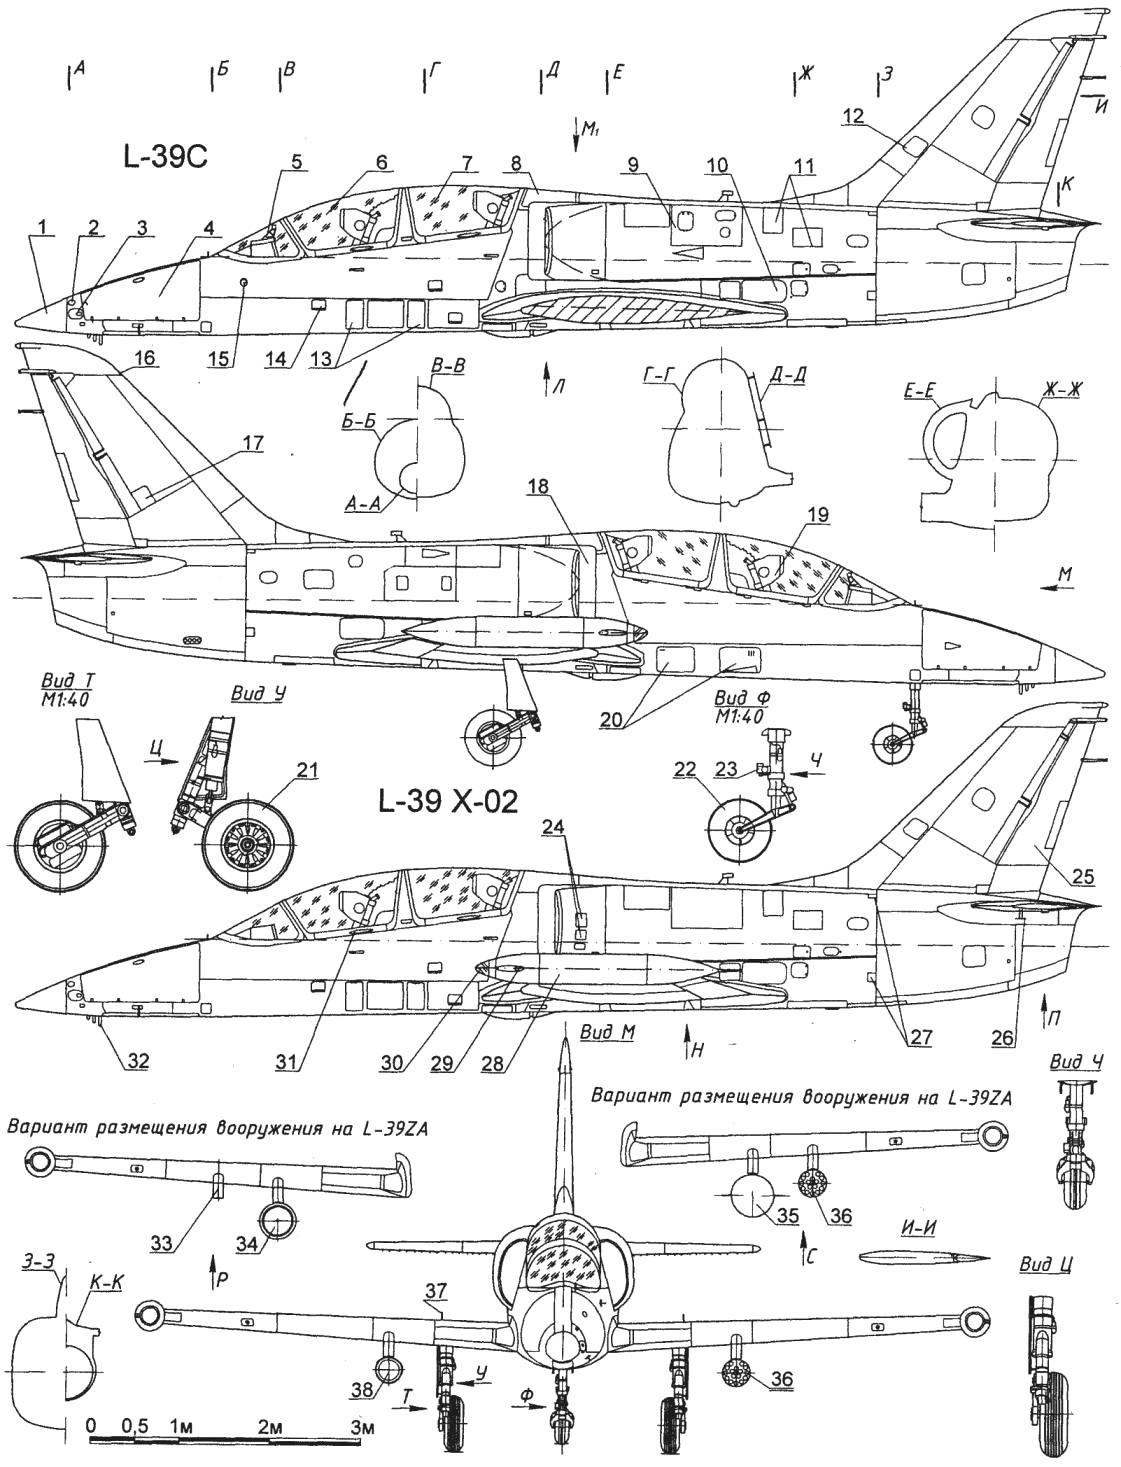 Учебно-боевой самолет L-39